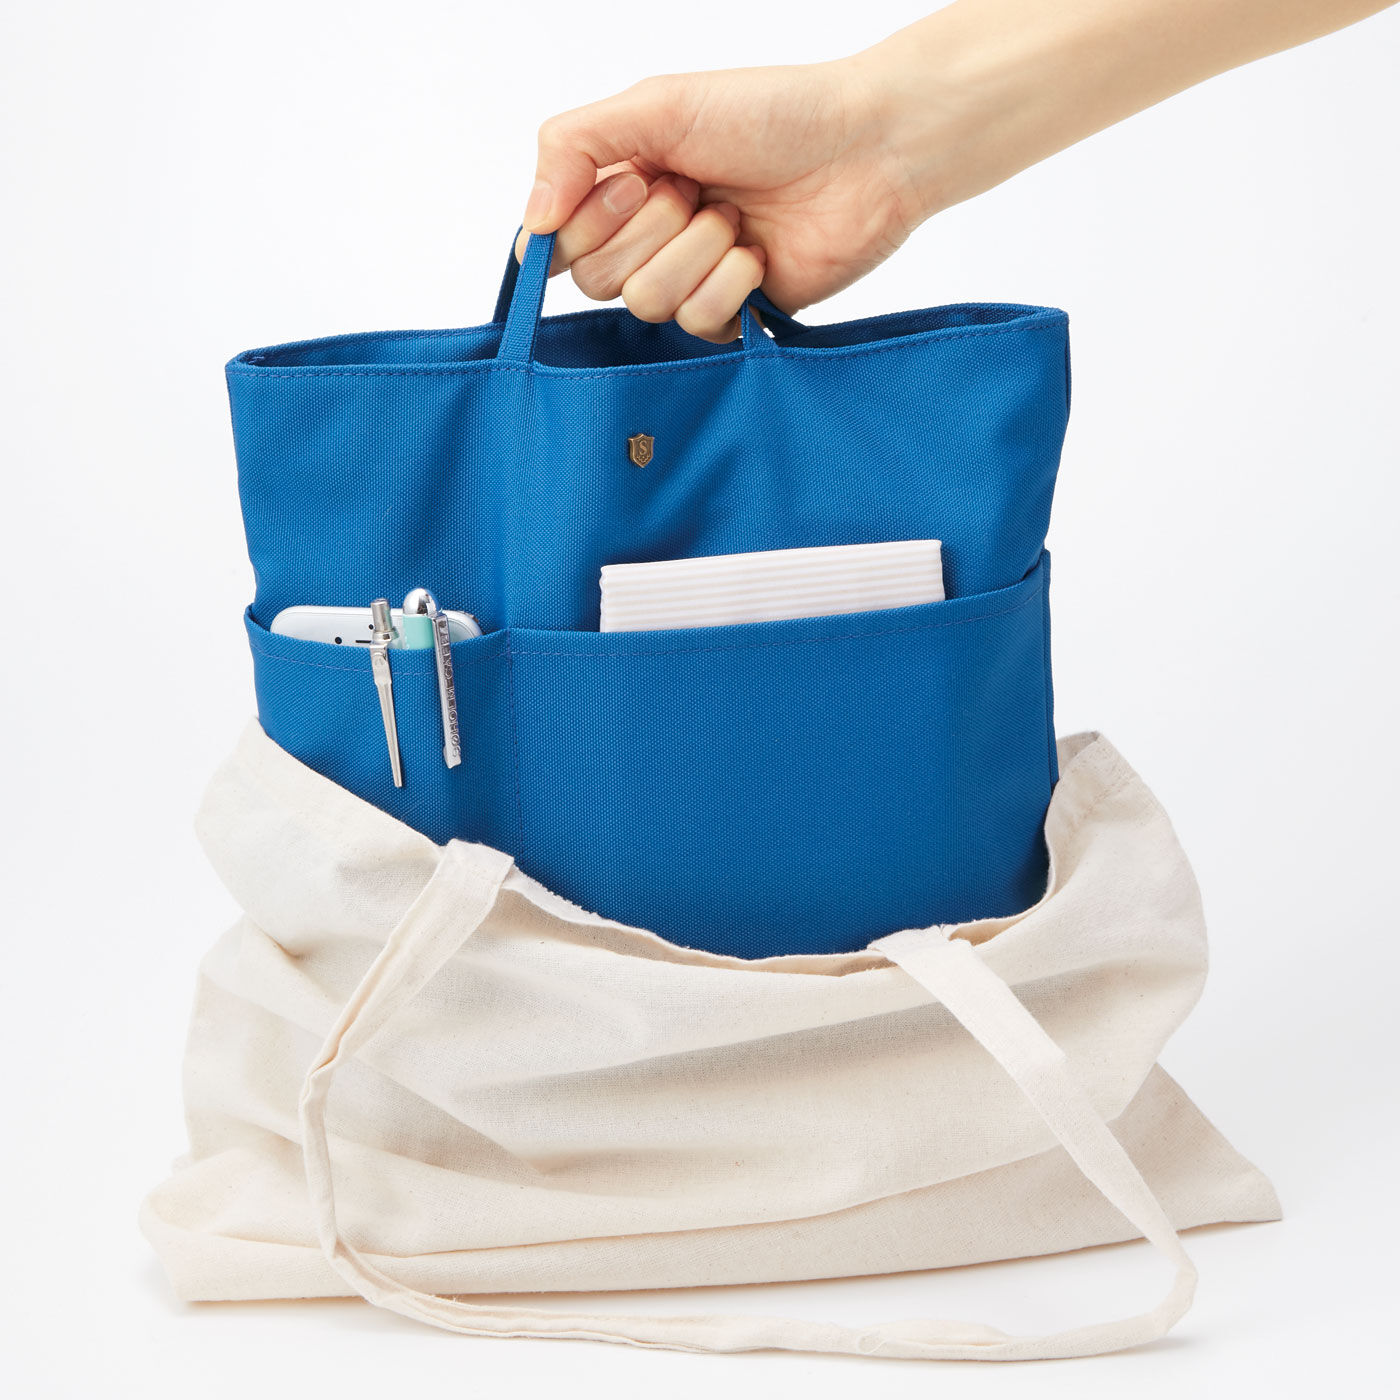 フェリシモの雑貨Kraso|エッセイスト・整理収納アドバイザー柳沢小実さんと作った リュックや深めのバッグを整理整とん 縦型バッグインポケットの会|布バッグも使いやすく。